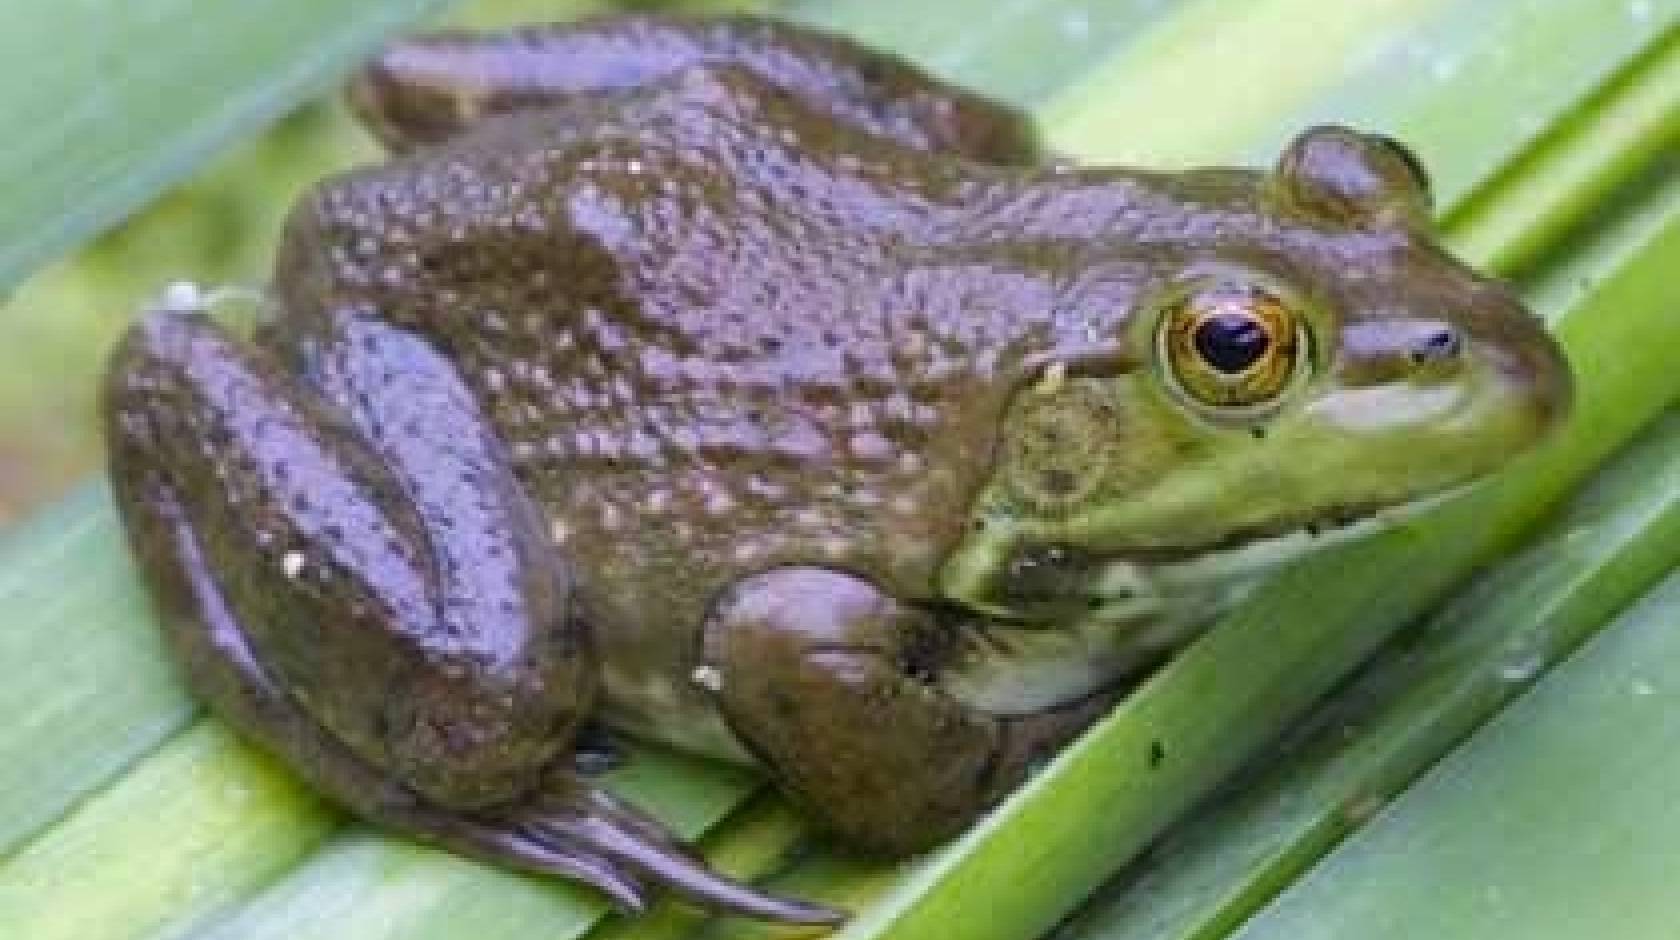 Bullfrog sitting on leaf